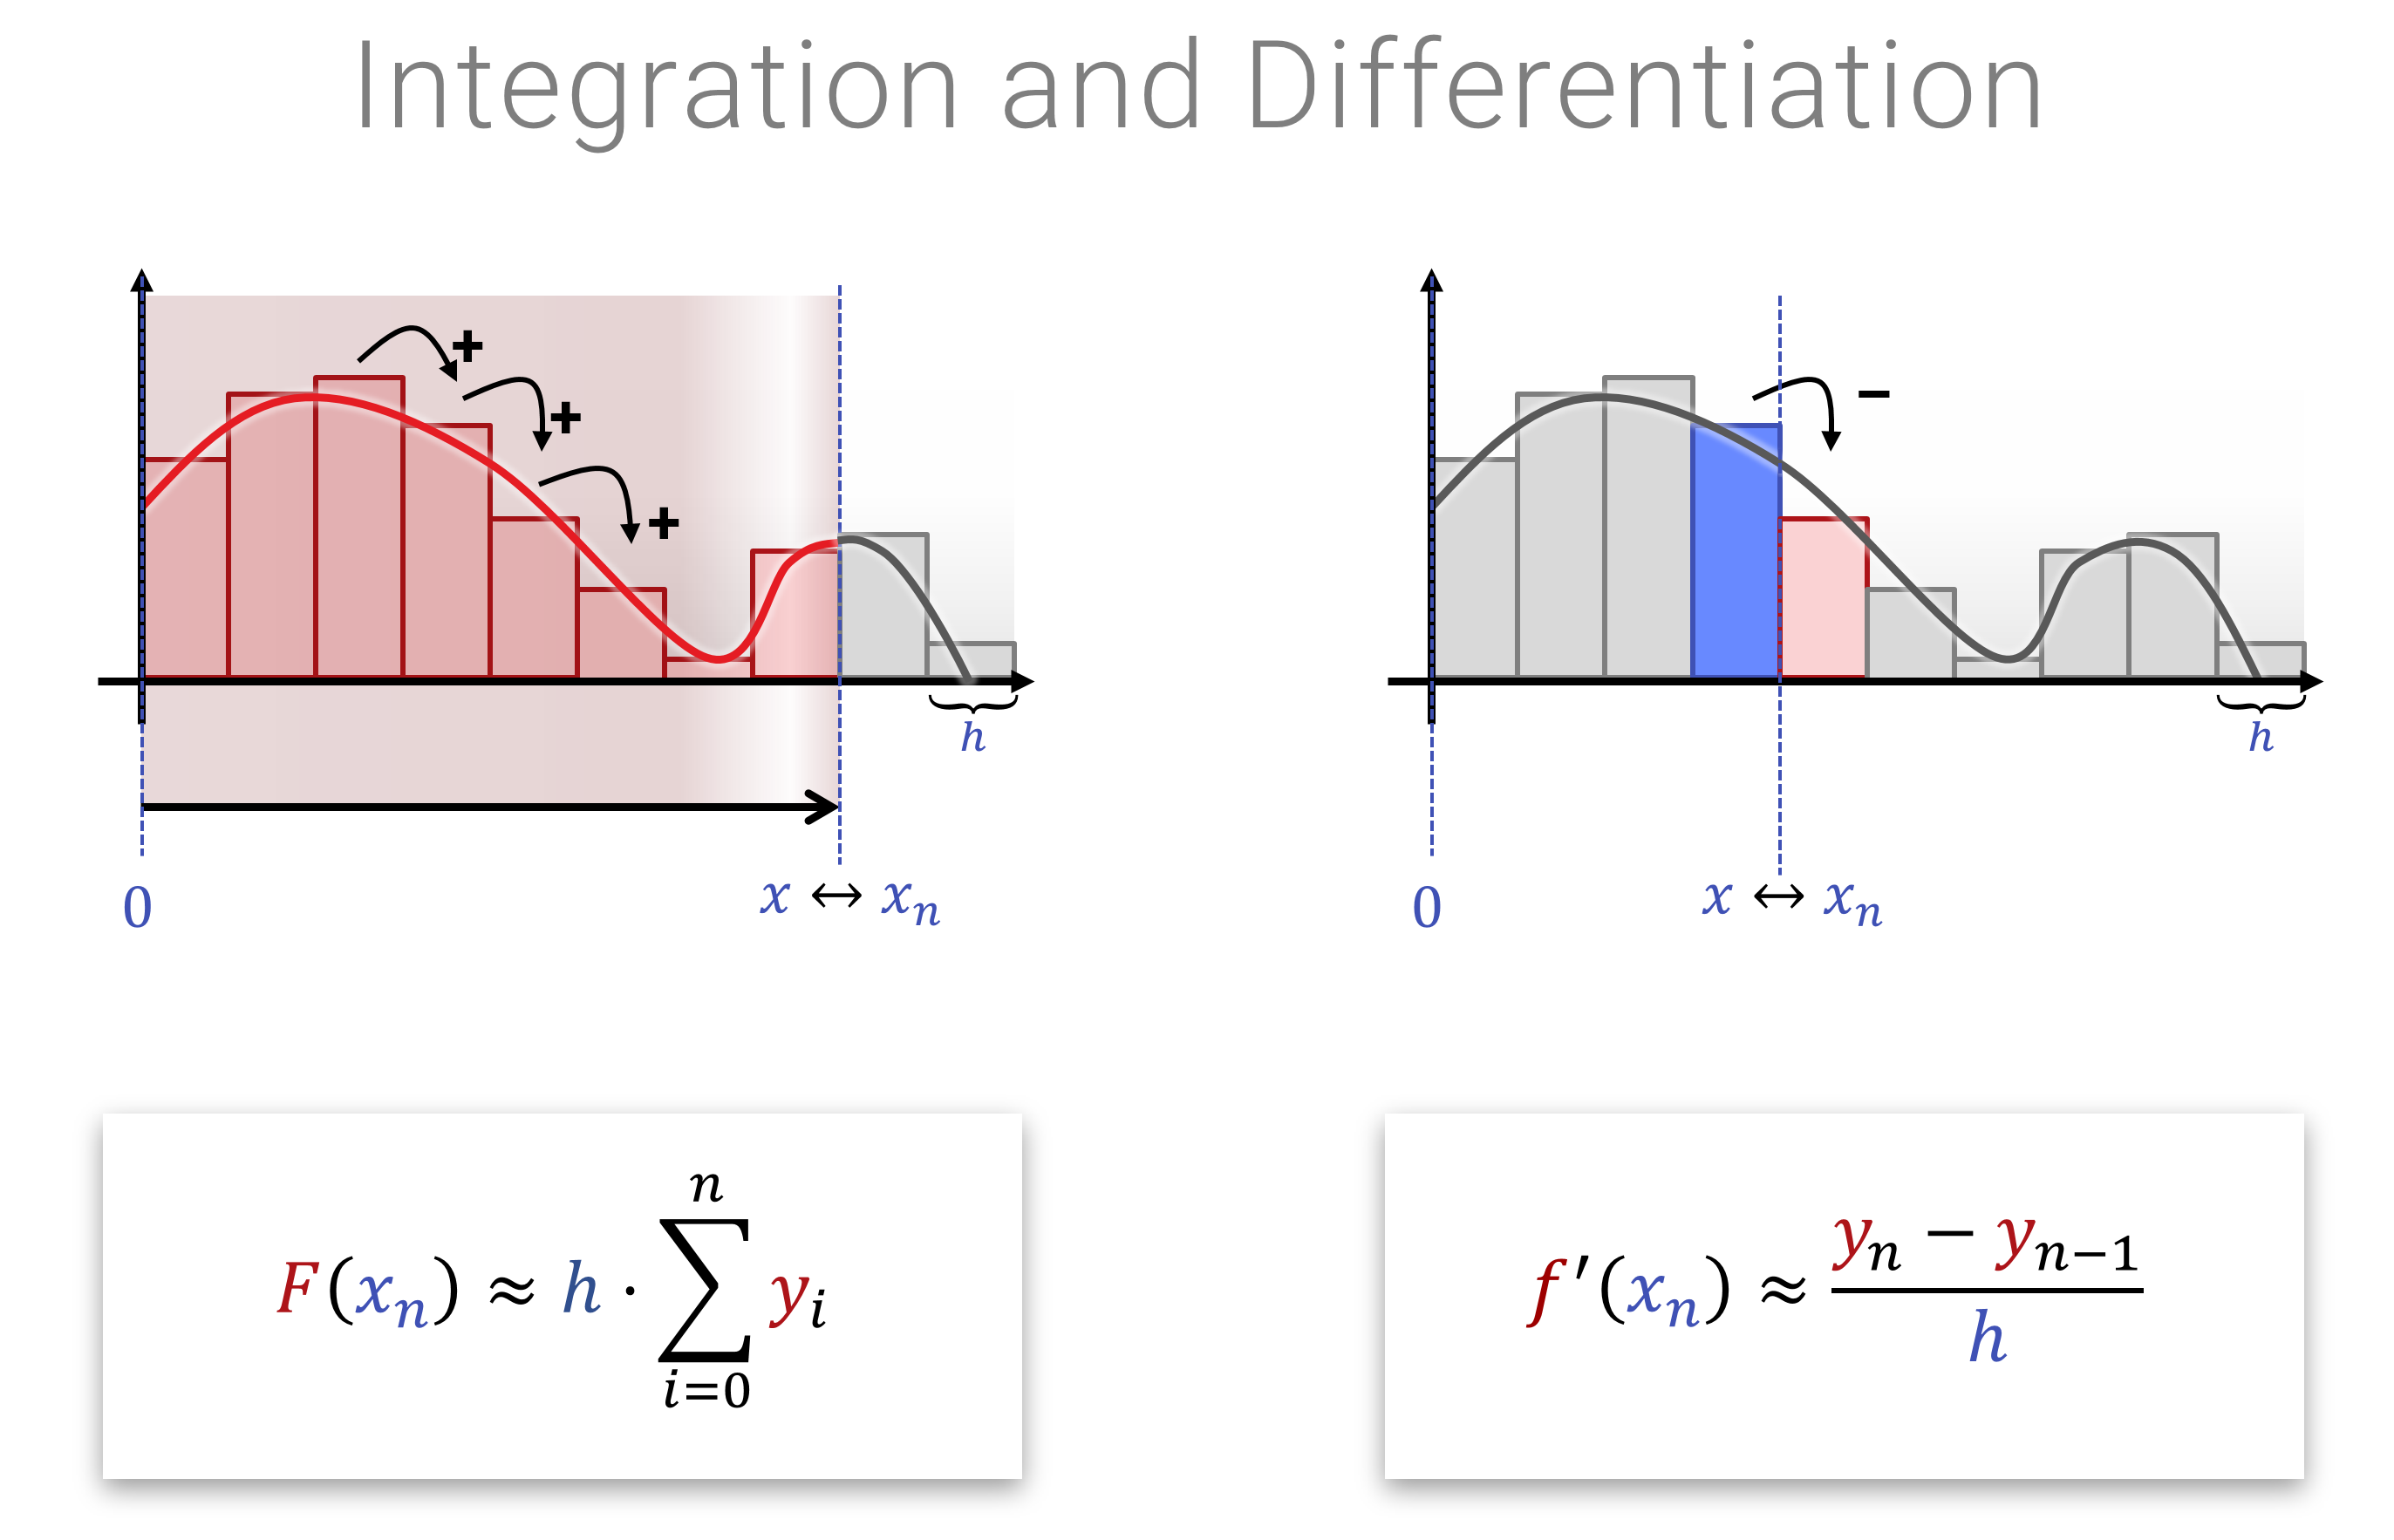 Integration und Differentiation im Diskreten sind nur Summen bzw. Differenzen von Einträgen in unserem “gedachten Array” - das ist natürlich etwas außerordentlich lineares.